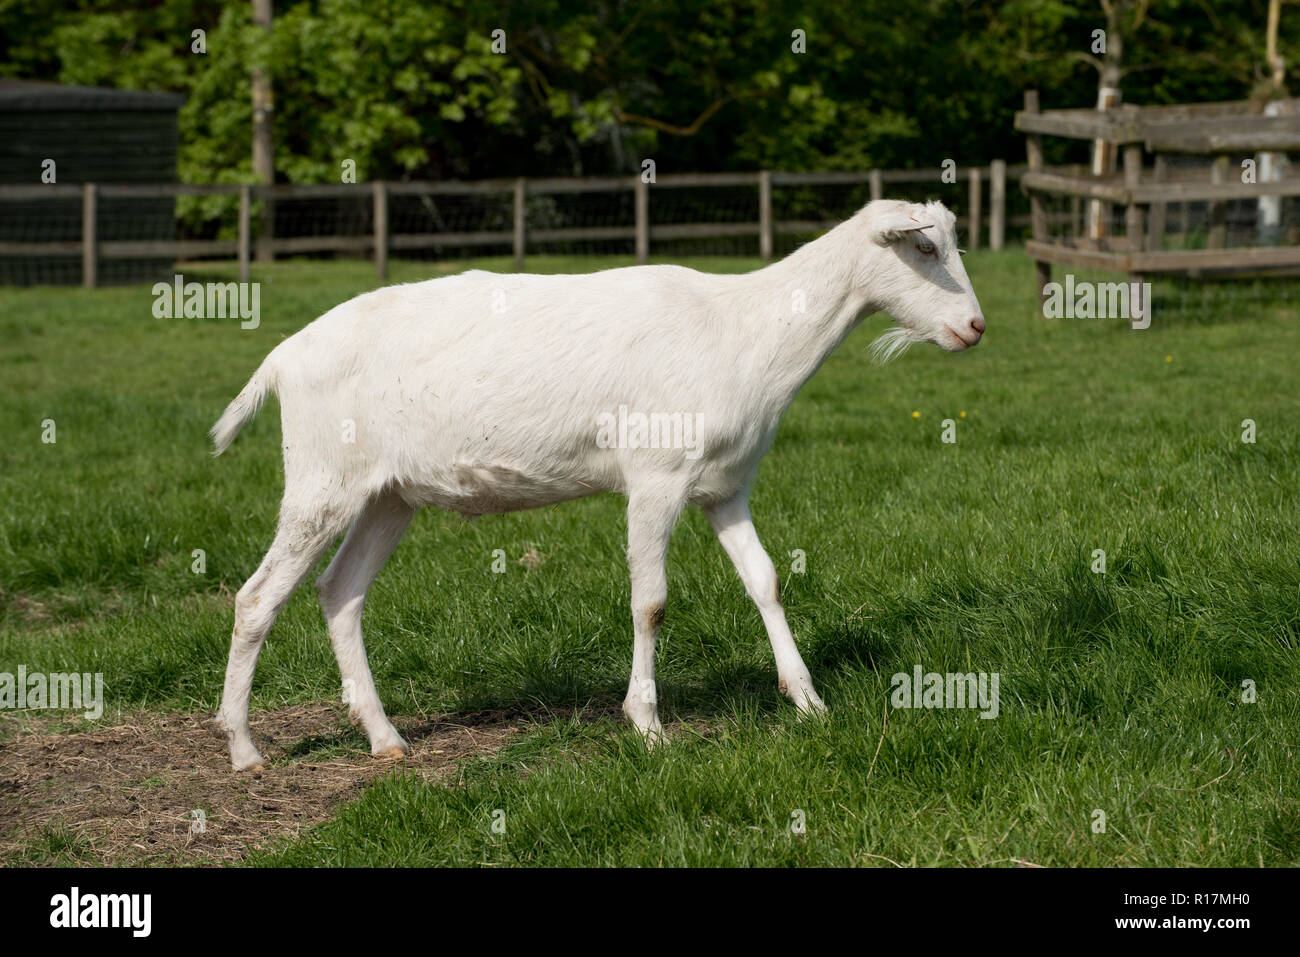 Saanen cross dit s (mâle castré) chèvres la descendance de chèvres laitières maintenu à un animal, Berkshire, Mai Banque D'Images